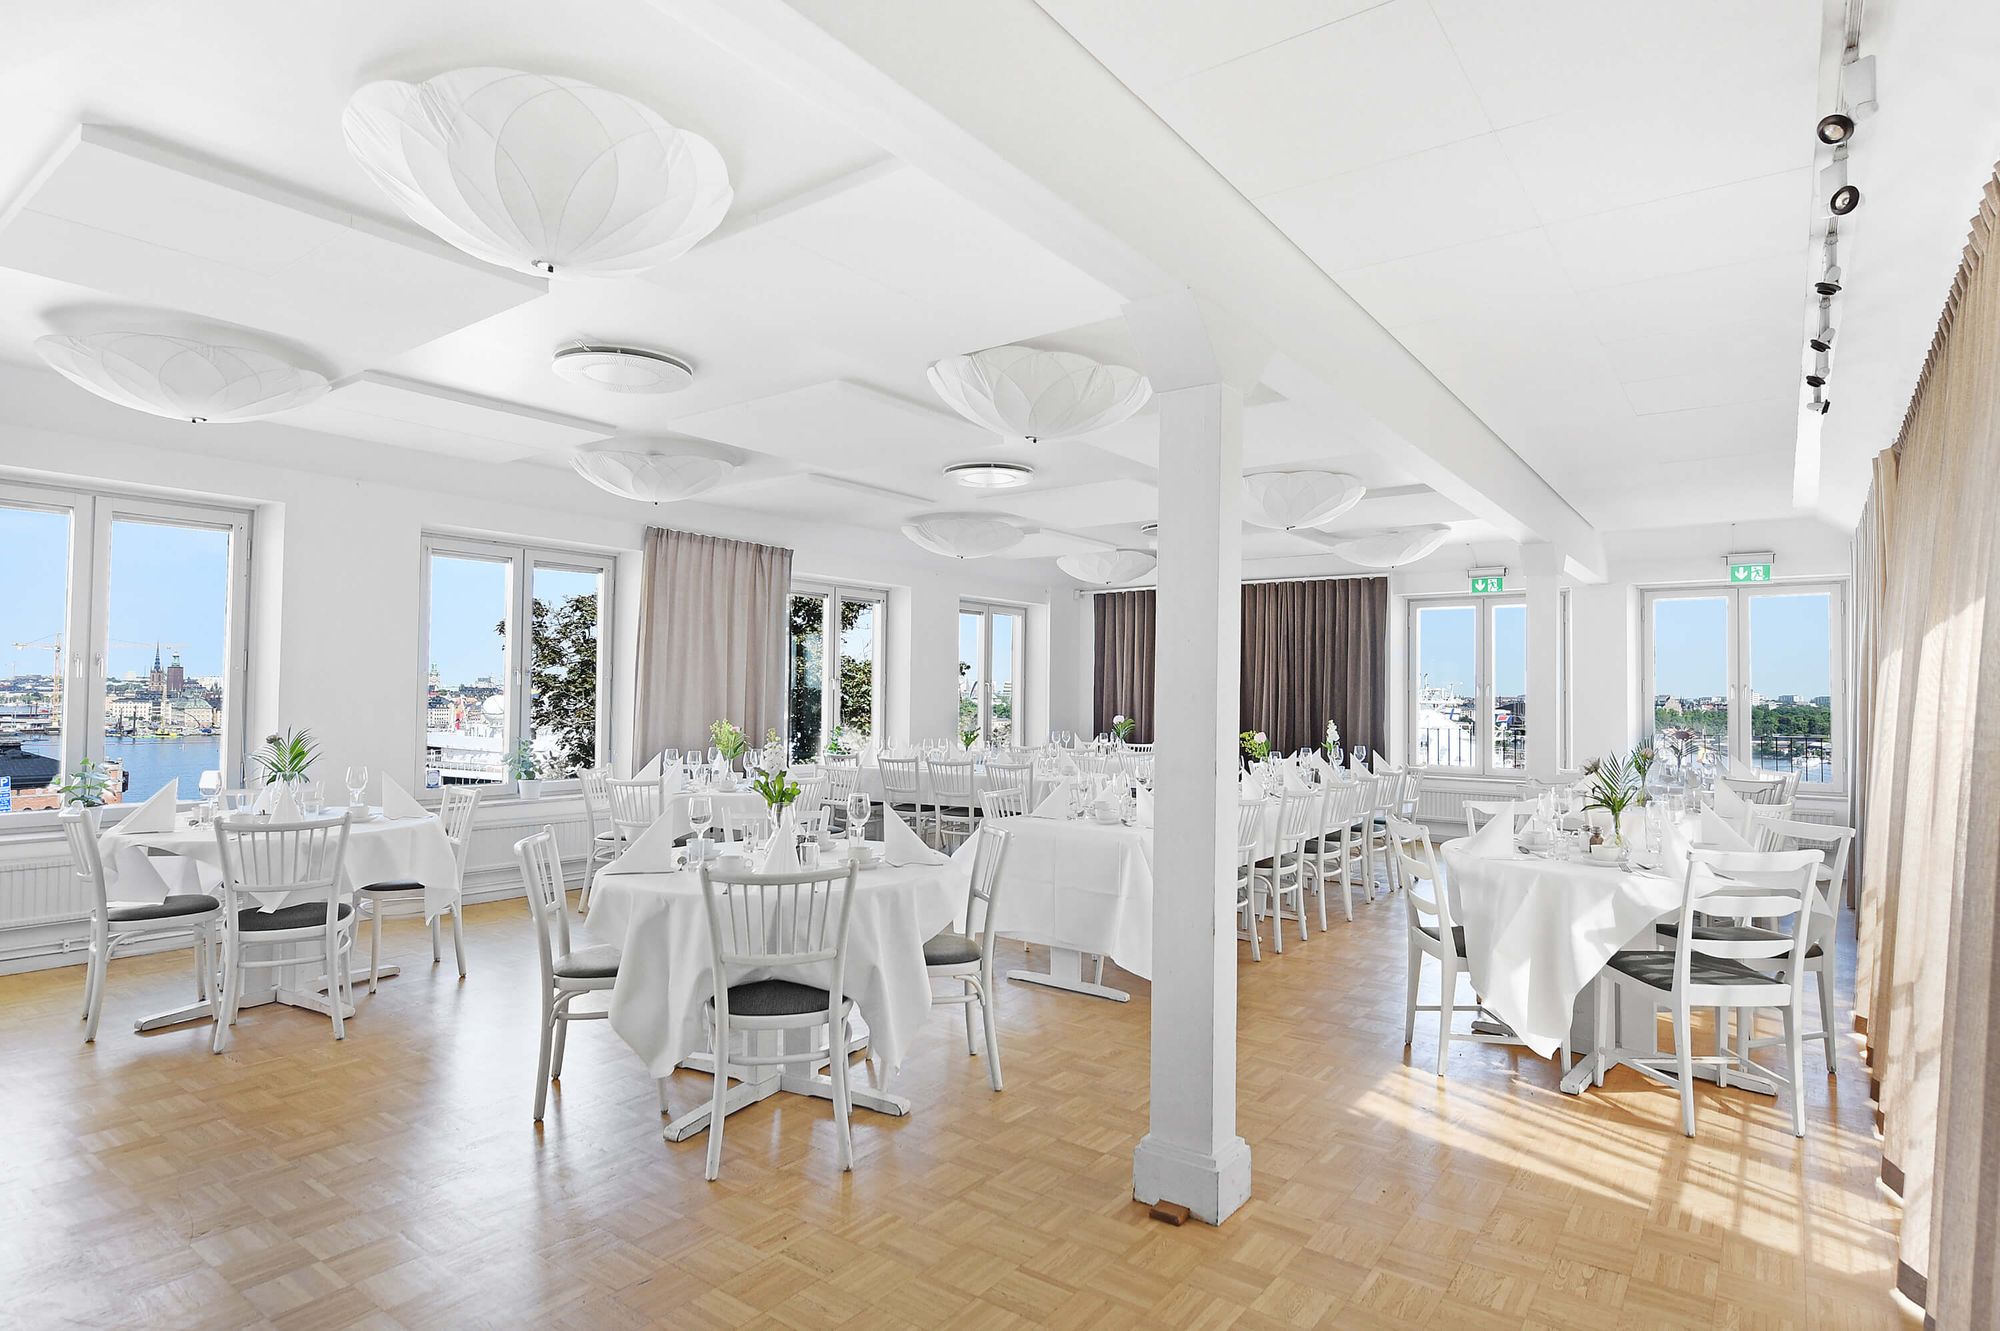 På Erstaklippan ligger Ersta terrass, en fin bröllopslokal vid vattnet i Stockholm